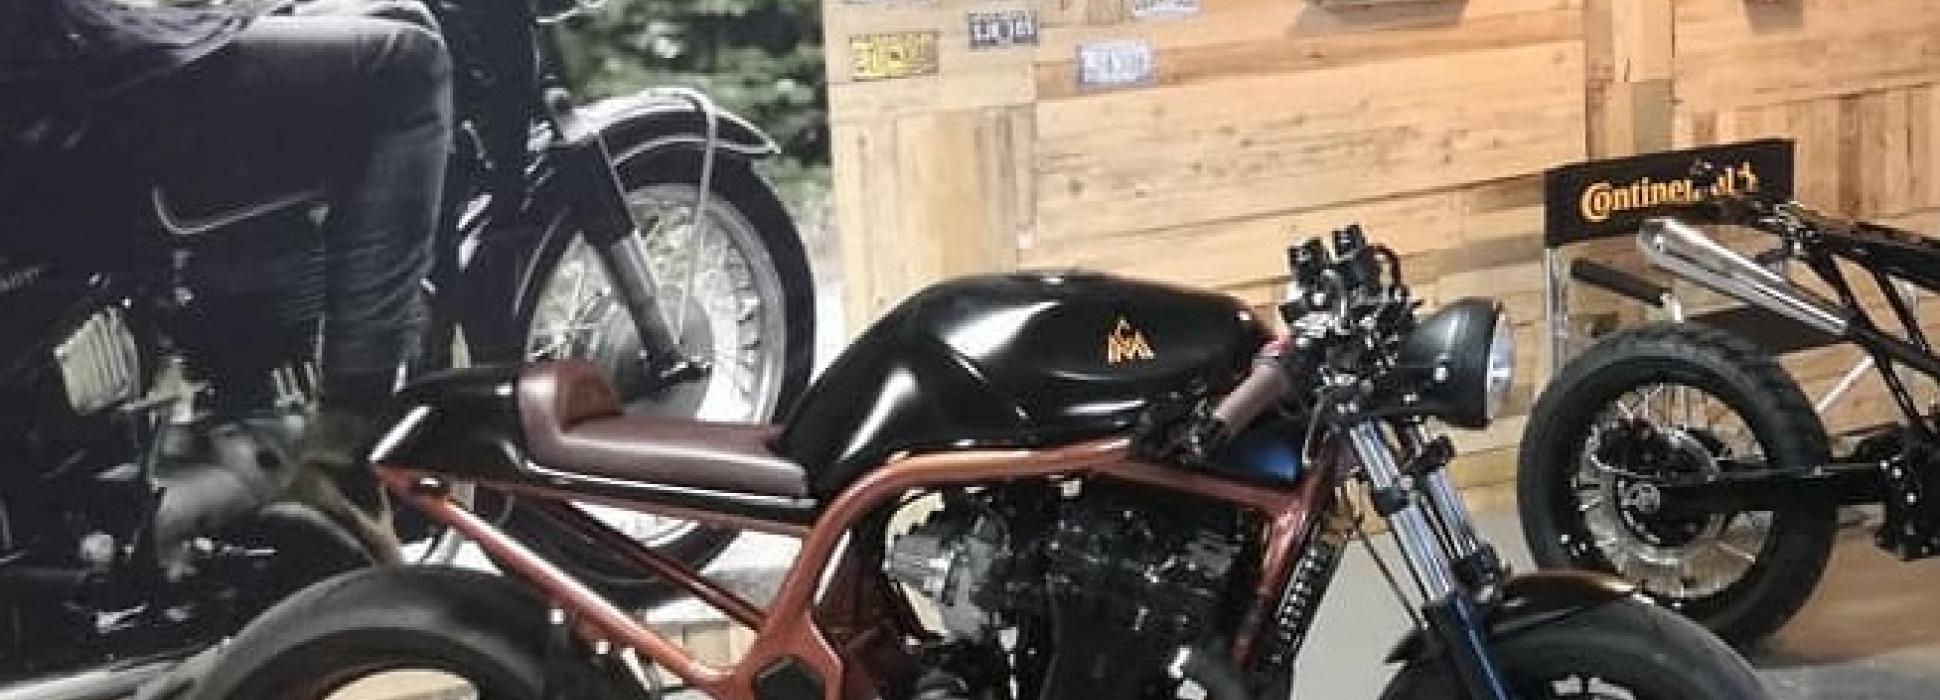 “Le Coin du motard” à Saint-Sauveur-la-Pommeraye réalise la moto de vos rêves